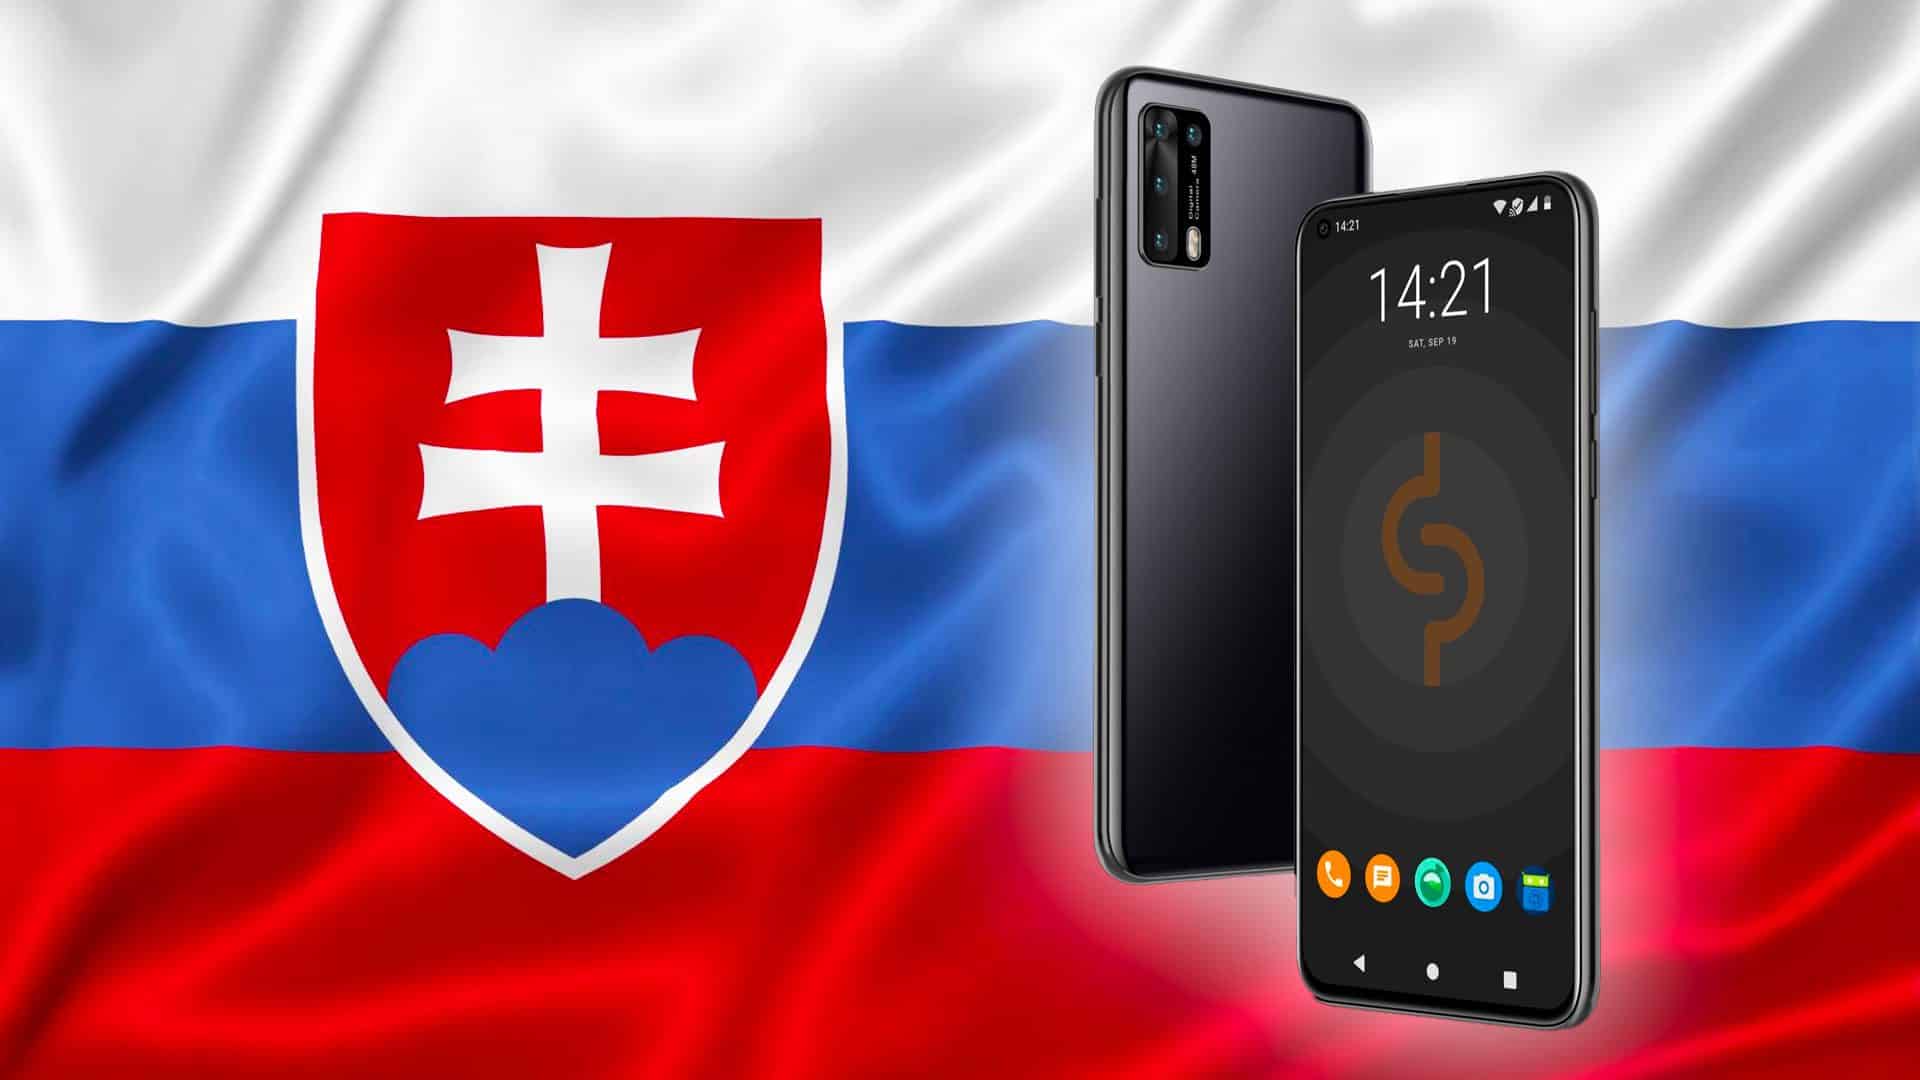 Prvý slovenský smartfón Simple Phone